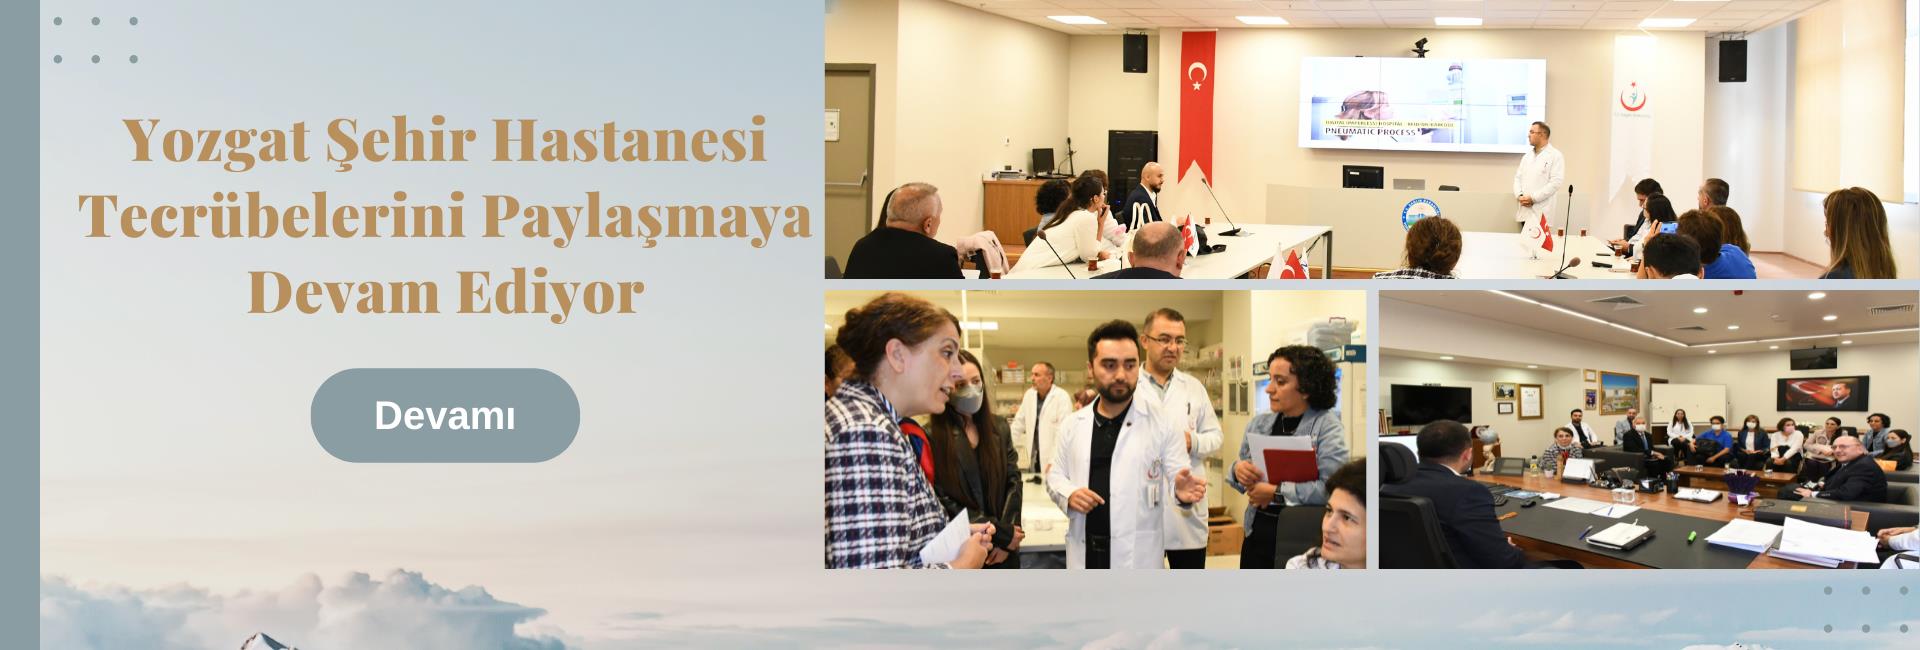 Yozgat Şehir Hastanemiz Tecrübelerini Paylaşmaya Devam Ediyor